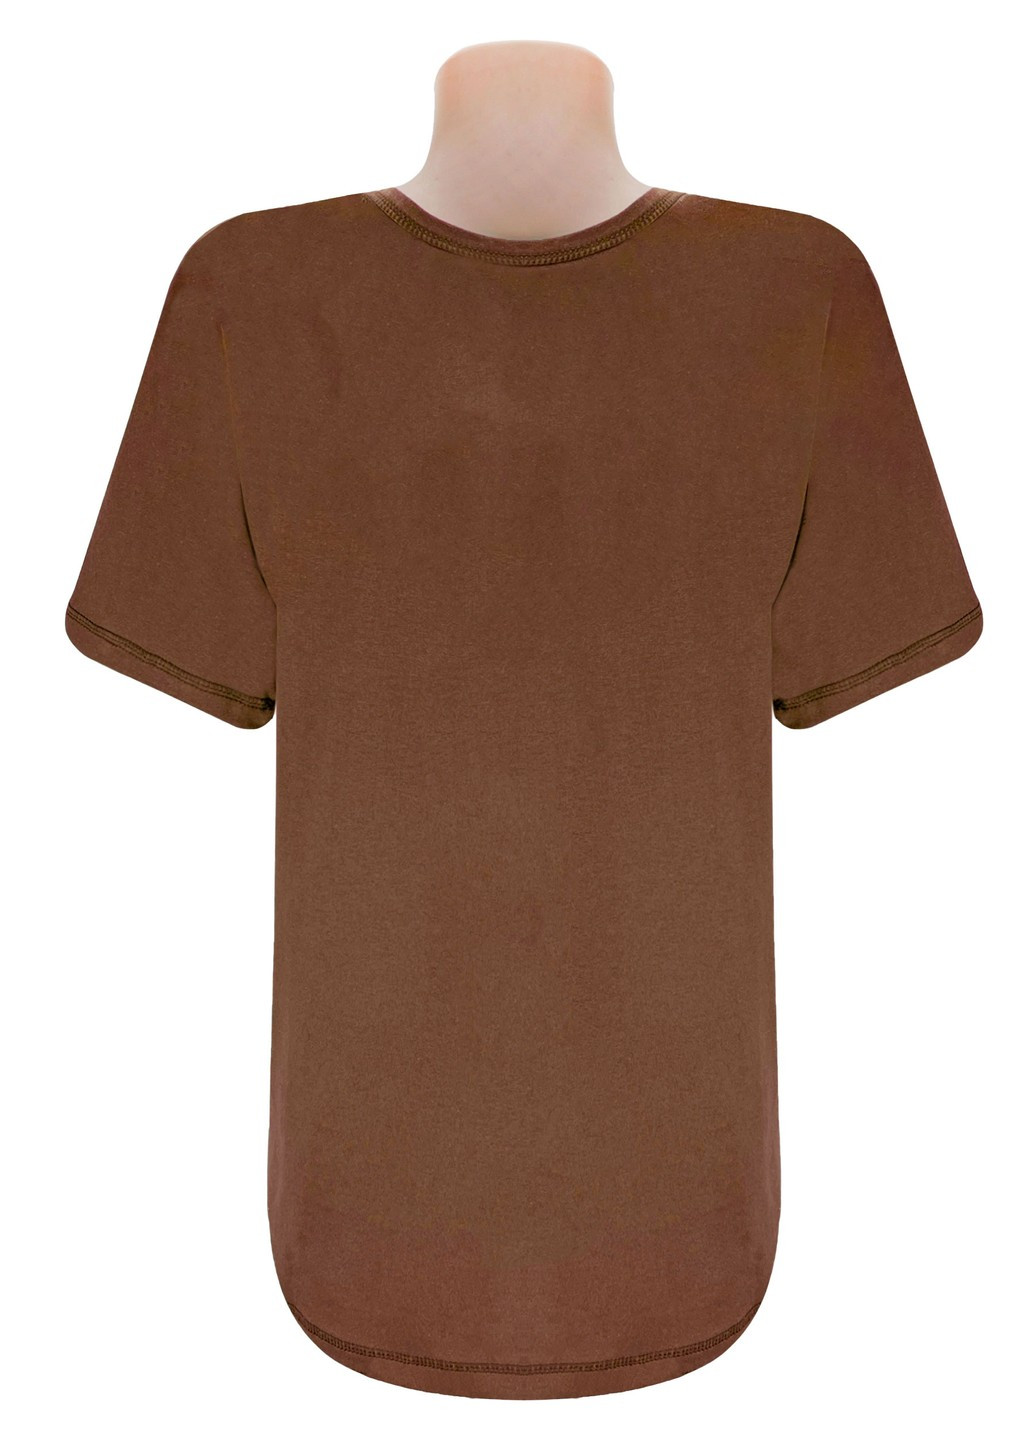 Коричневая футболка мужская кулир с коротким рукавом Жемчужина стилей 4601